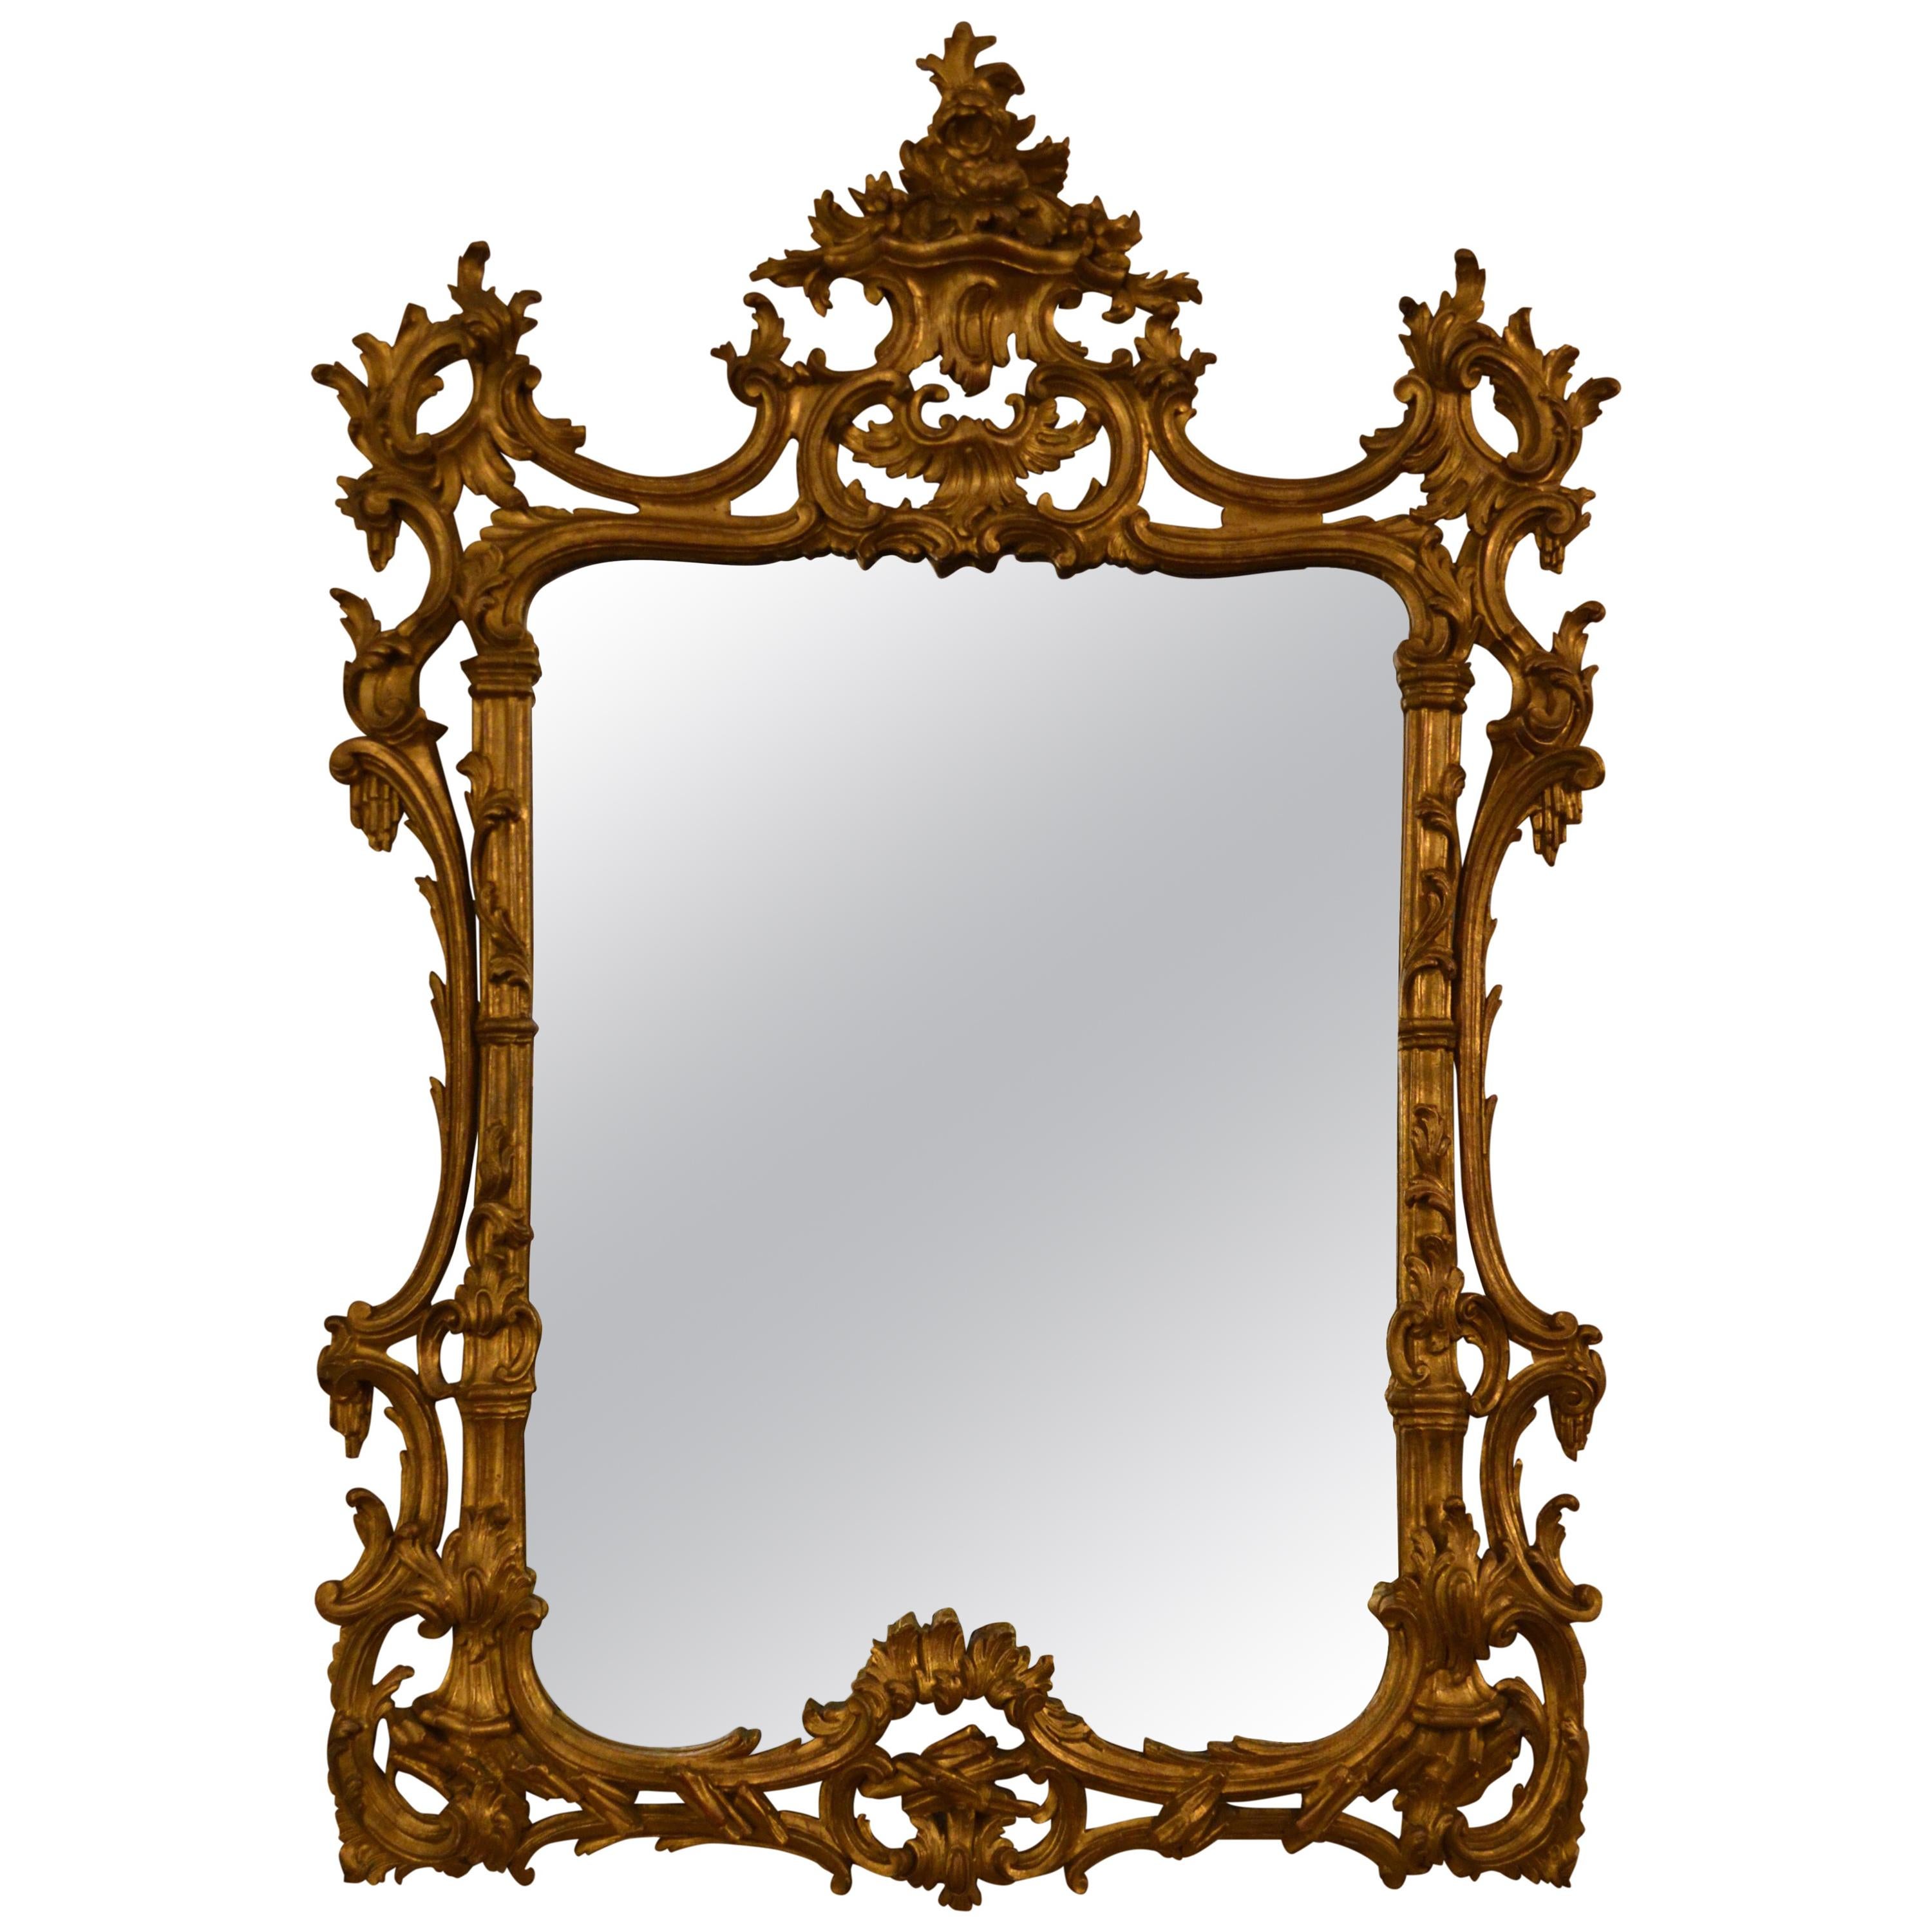 Antique miroir rocococo français du 19ème siècle à feuilles d'or